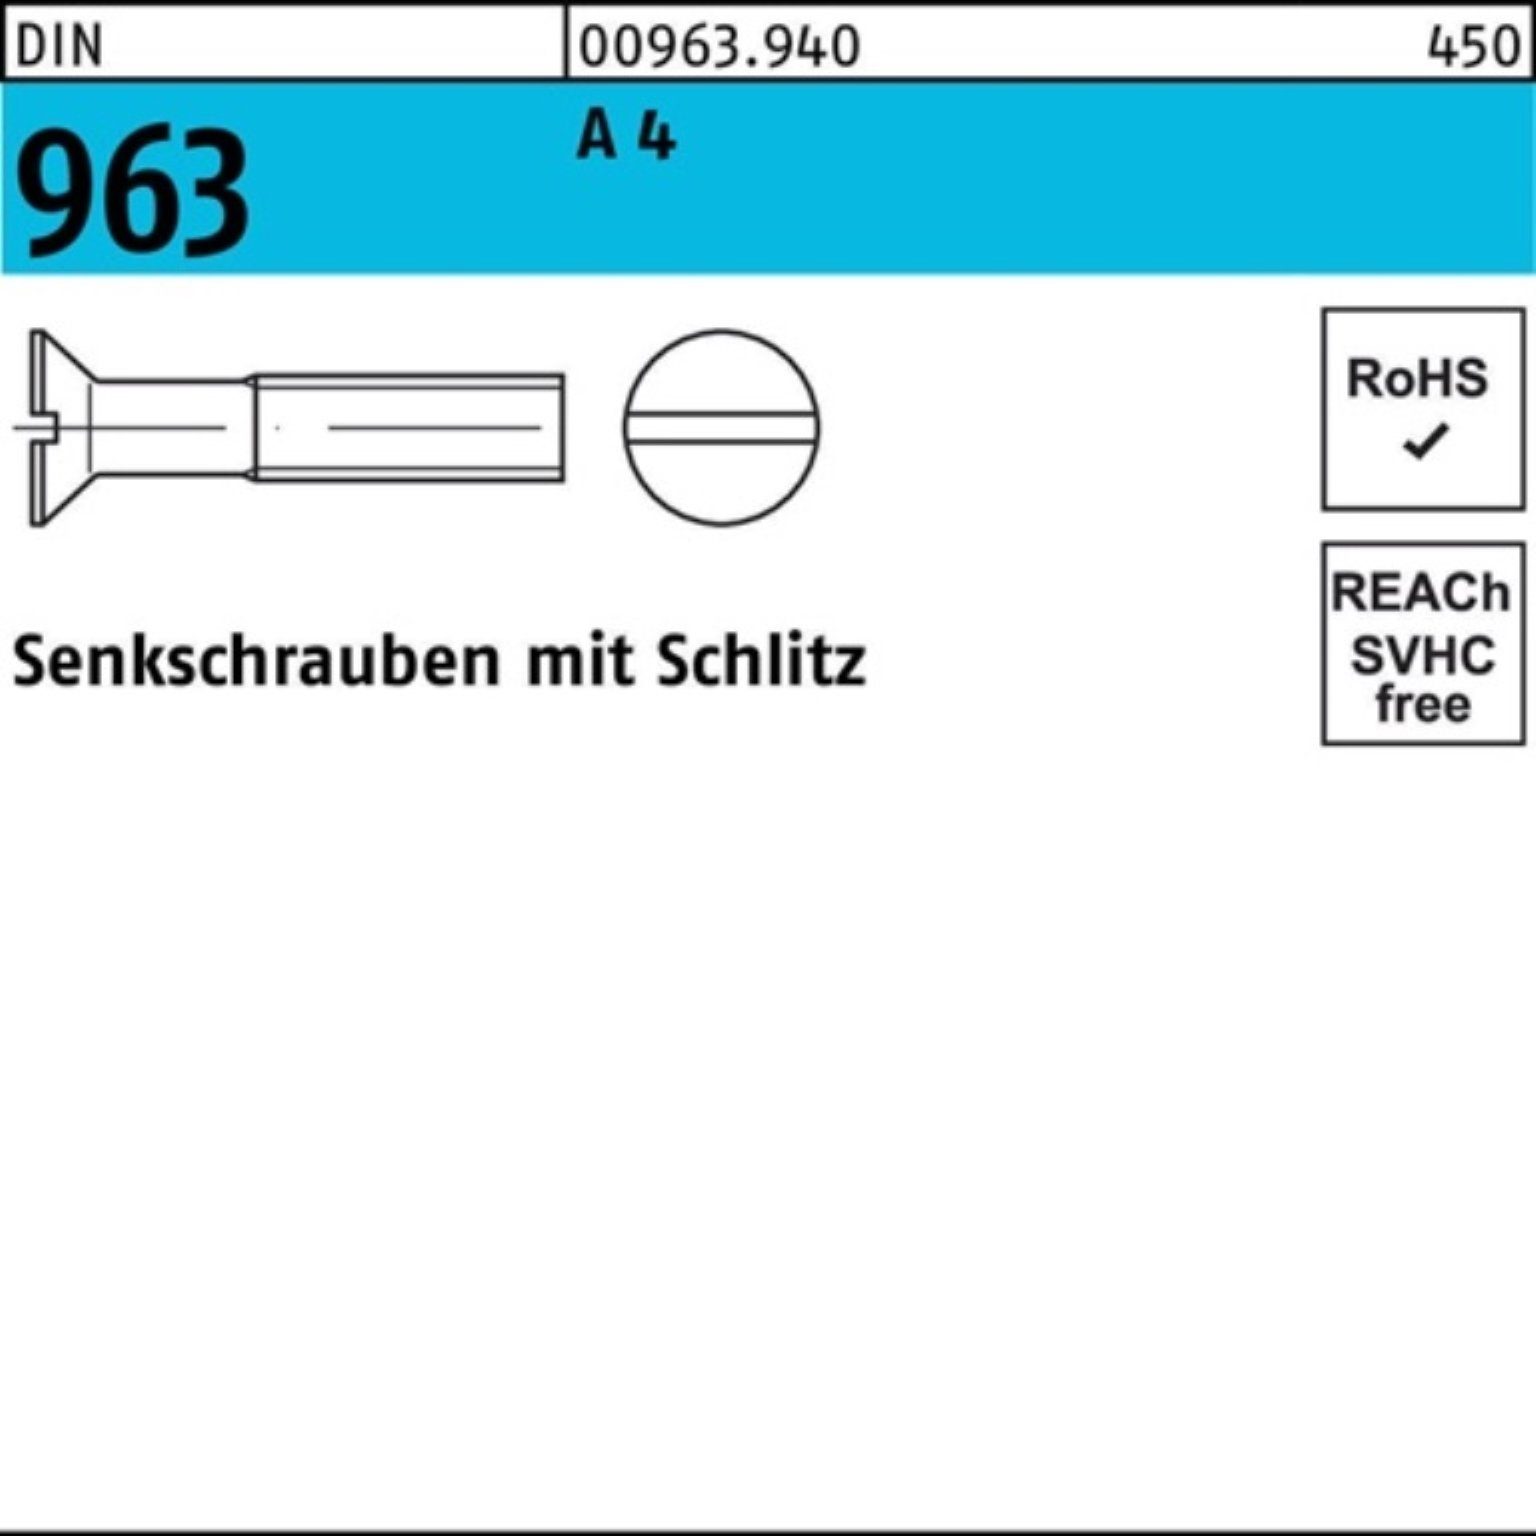 Reyher Senkschraube 4 DIN 55 Pack 963 A A 963 50 Stück Senkschraube Schlitz DIN 100er M8x